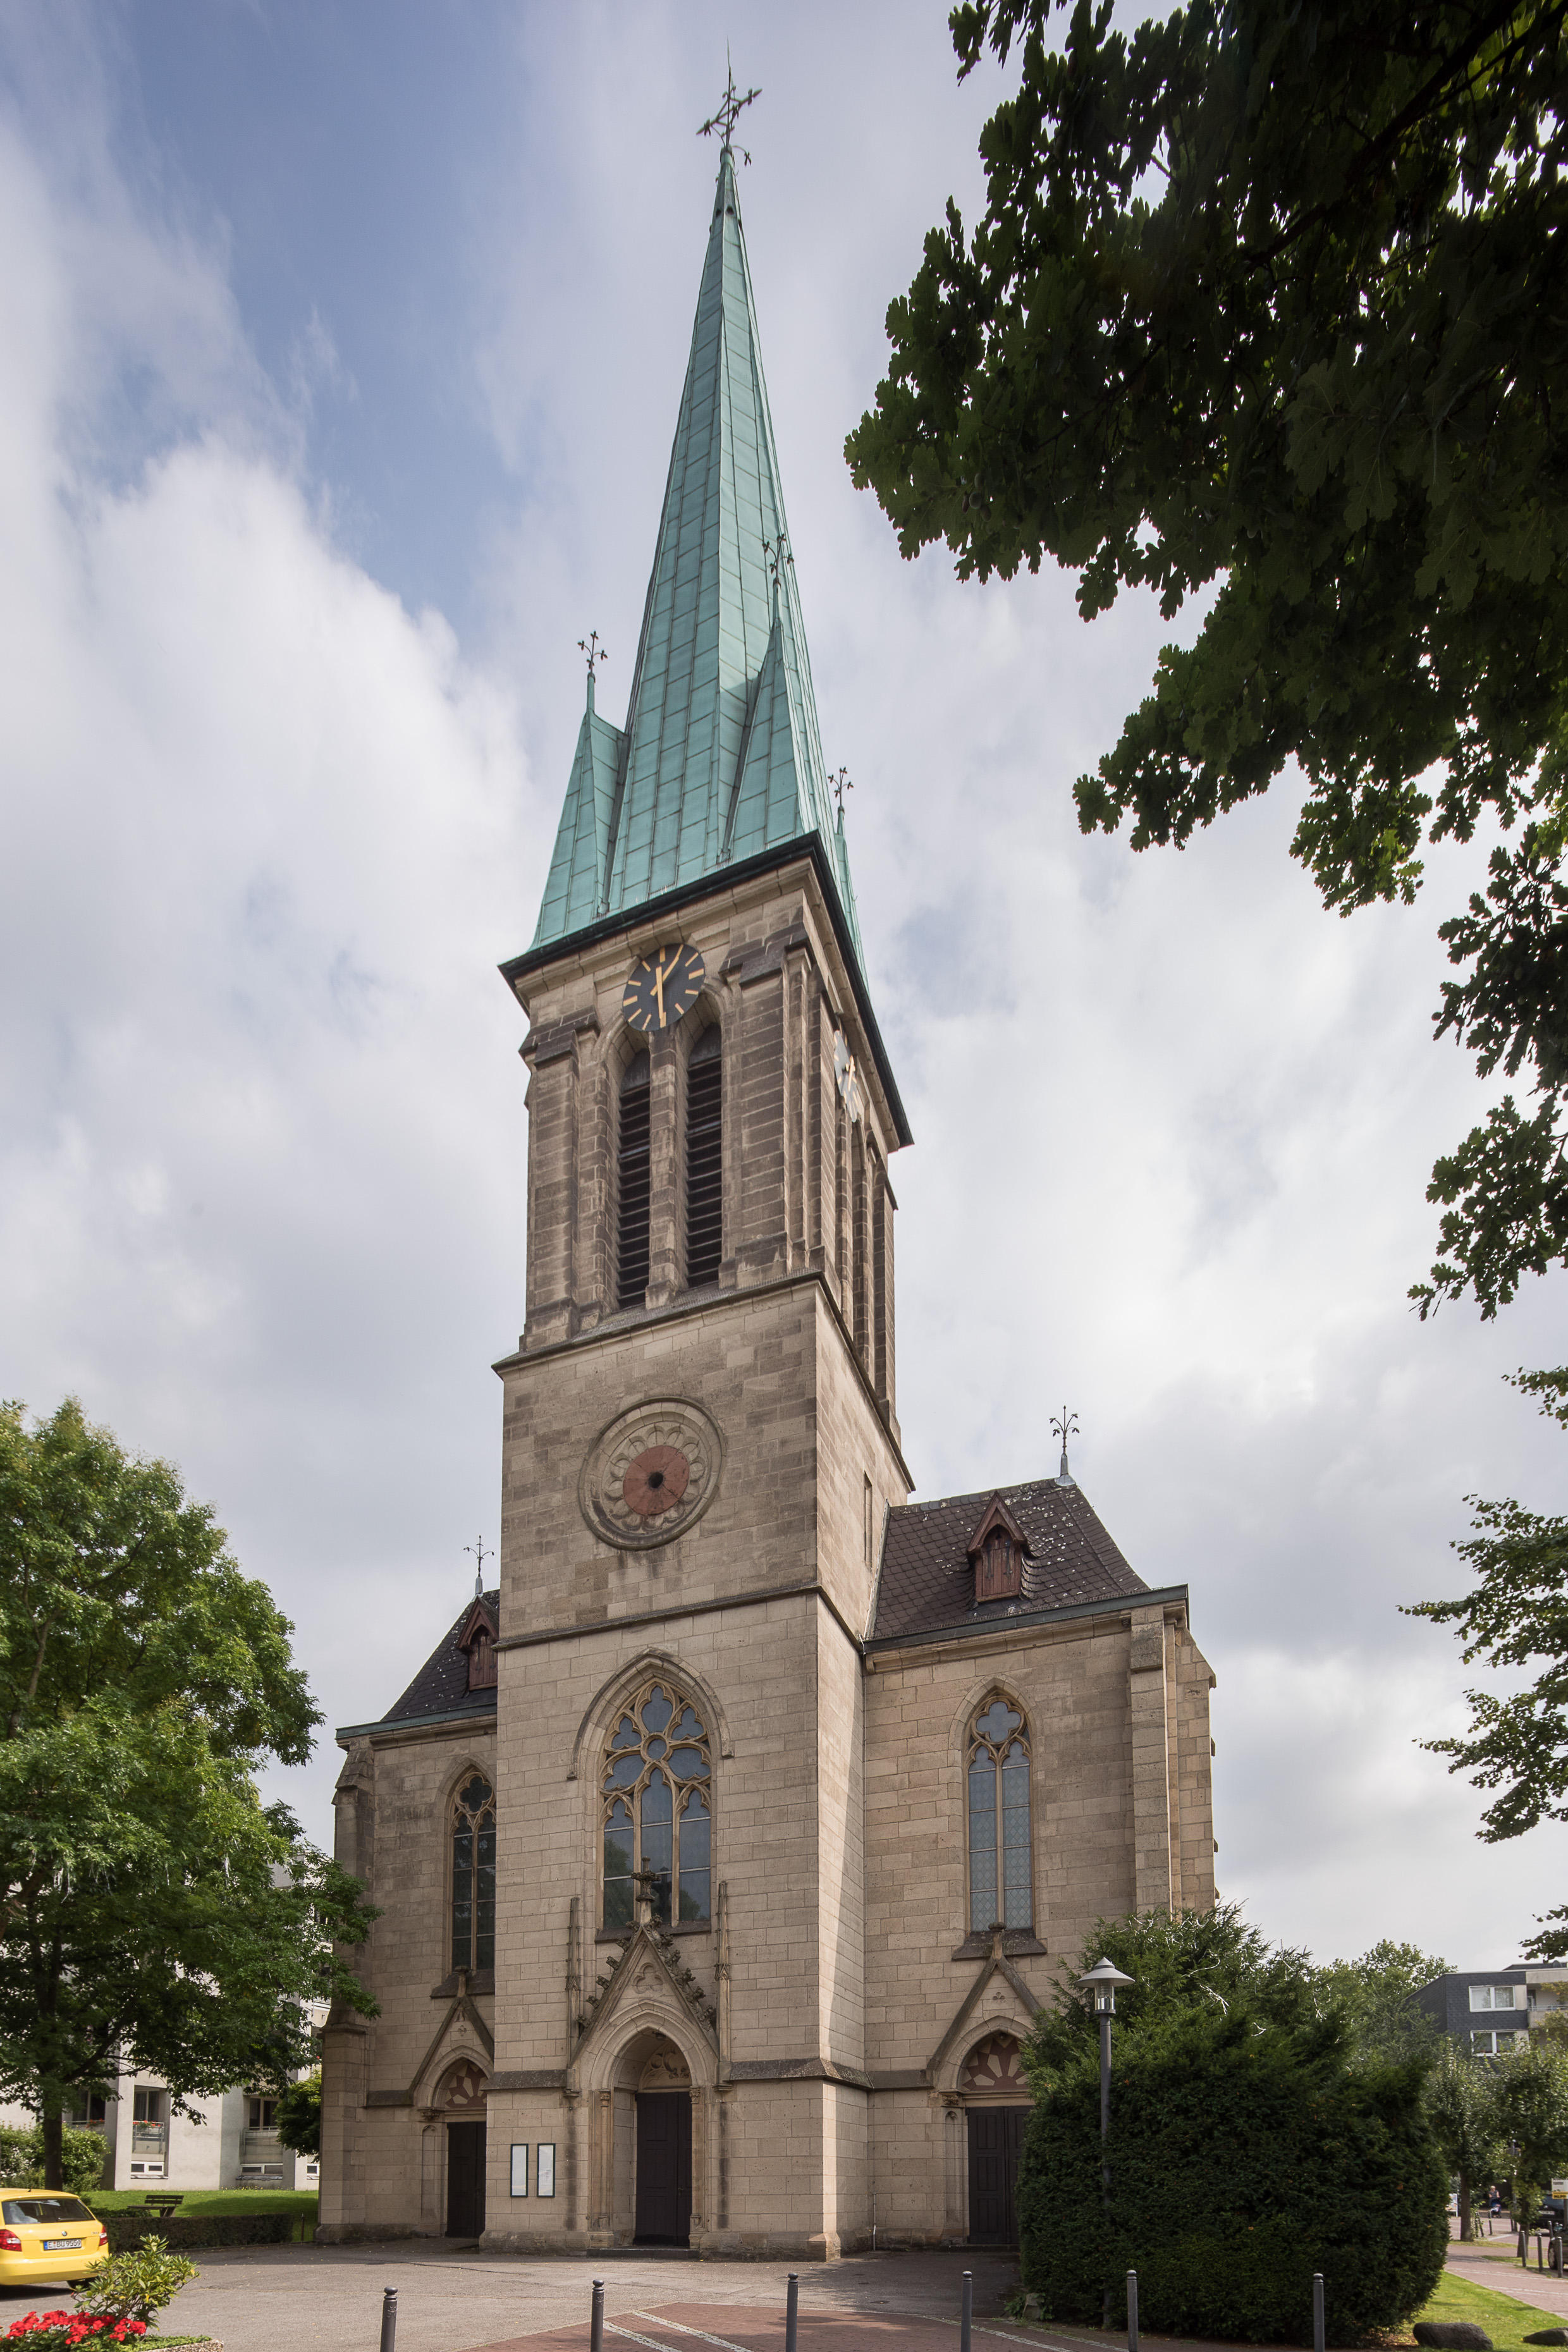 Bild 1 Friedenskirche Steele - Evangelische Kirchengemeinde Königssteele in Essen